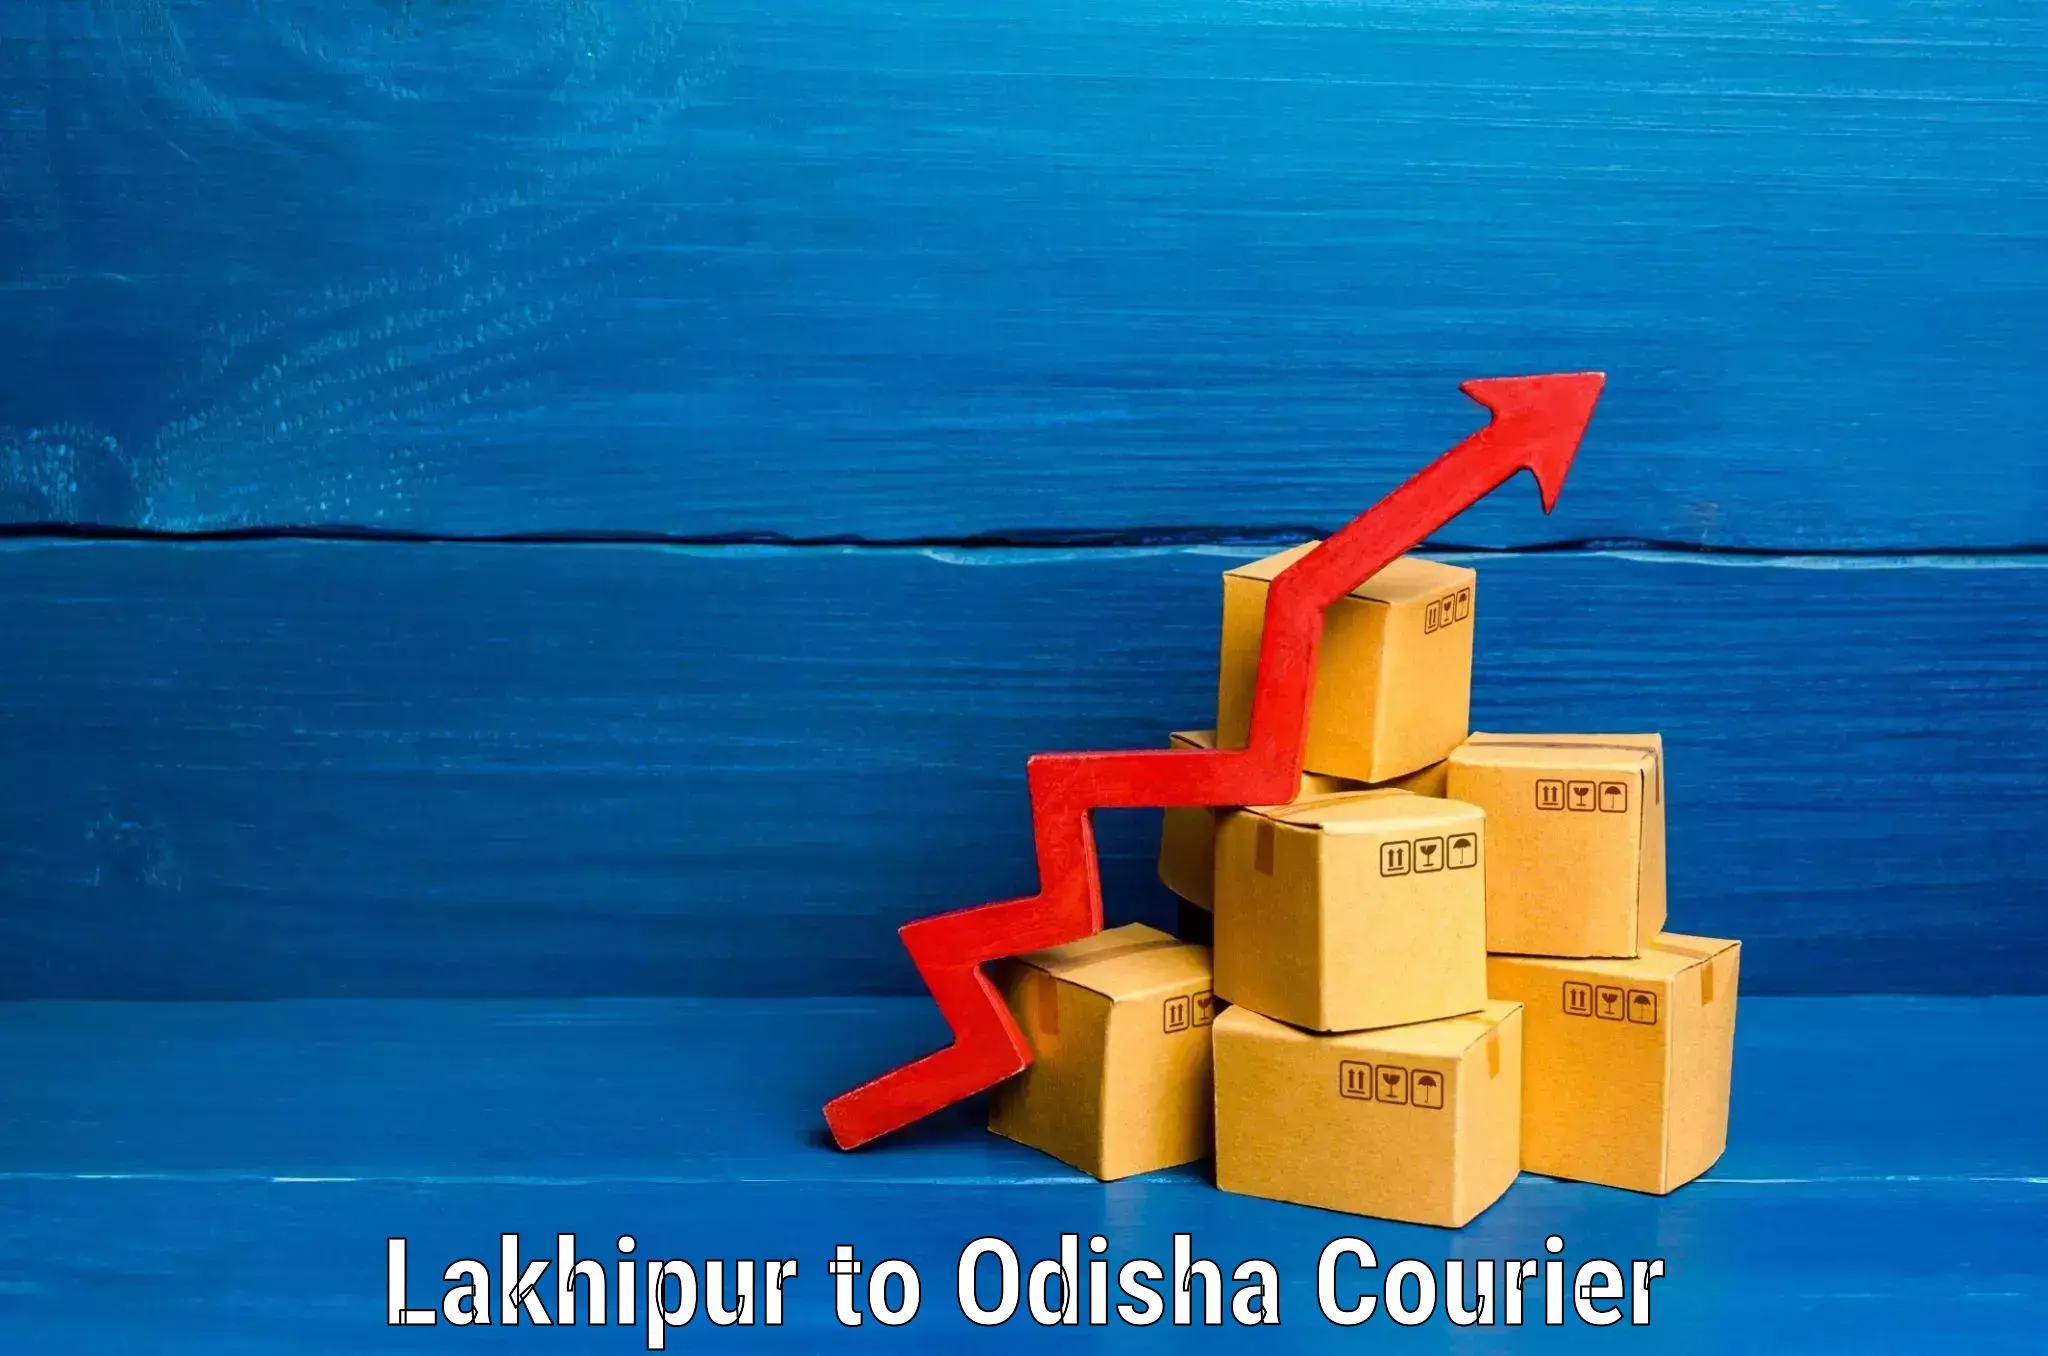 Luggage transport company Lakhipur to Rourkela